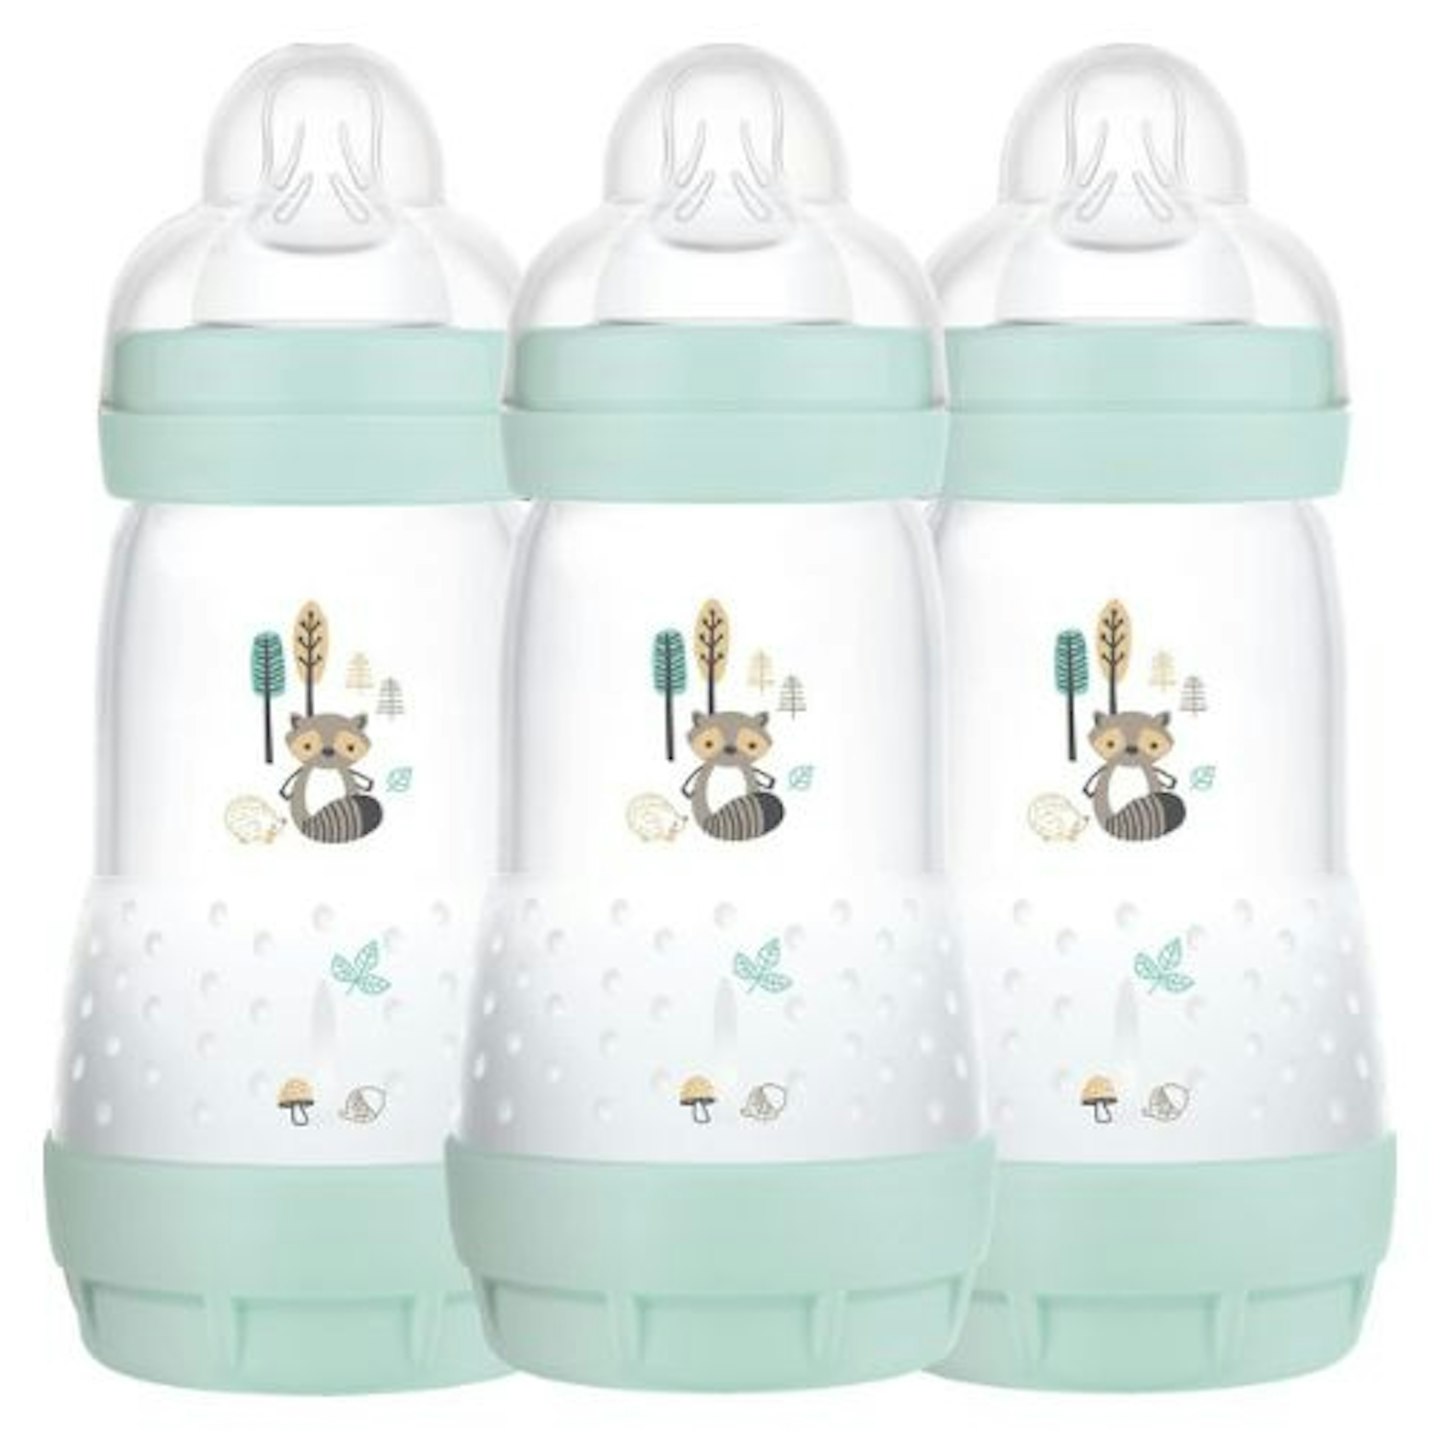 Best baby sterilisers MAM Easy Start Self-Sterilising Anti-Colic Baby Bottle 3 Pack 